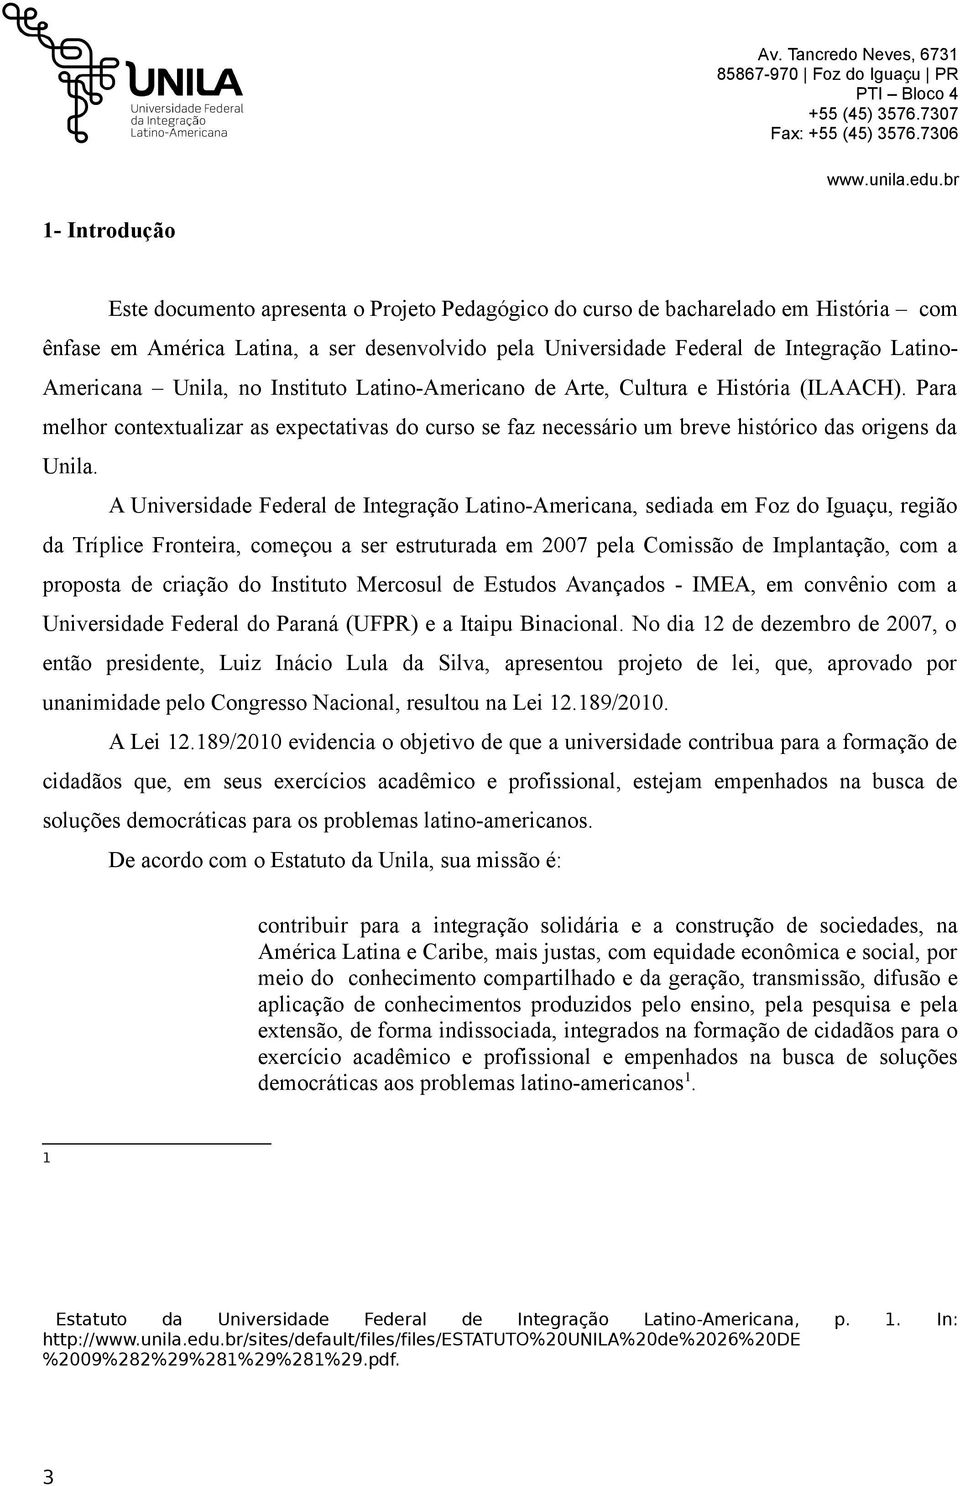 A Universidade Federal de Integração Latino-Americana, sediada em Foz do Iguaçu, região da Tríplice Fronteira, começou a ser estruturada em 2007 pela Comissão de Implantação, com a proposta de